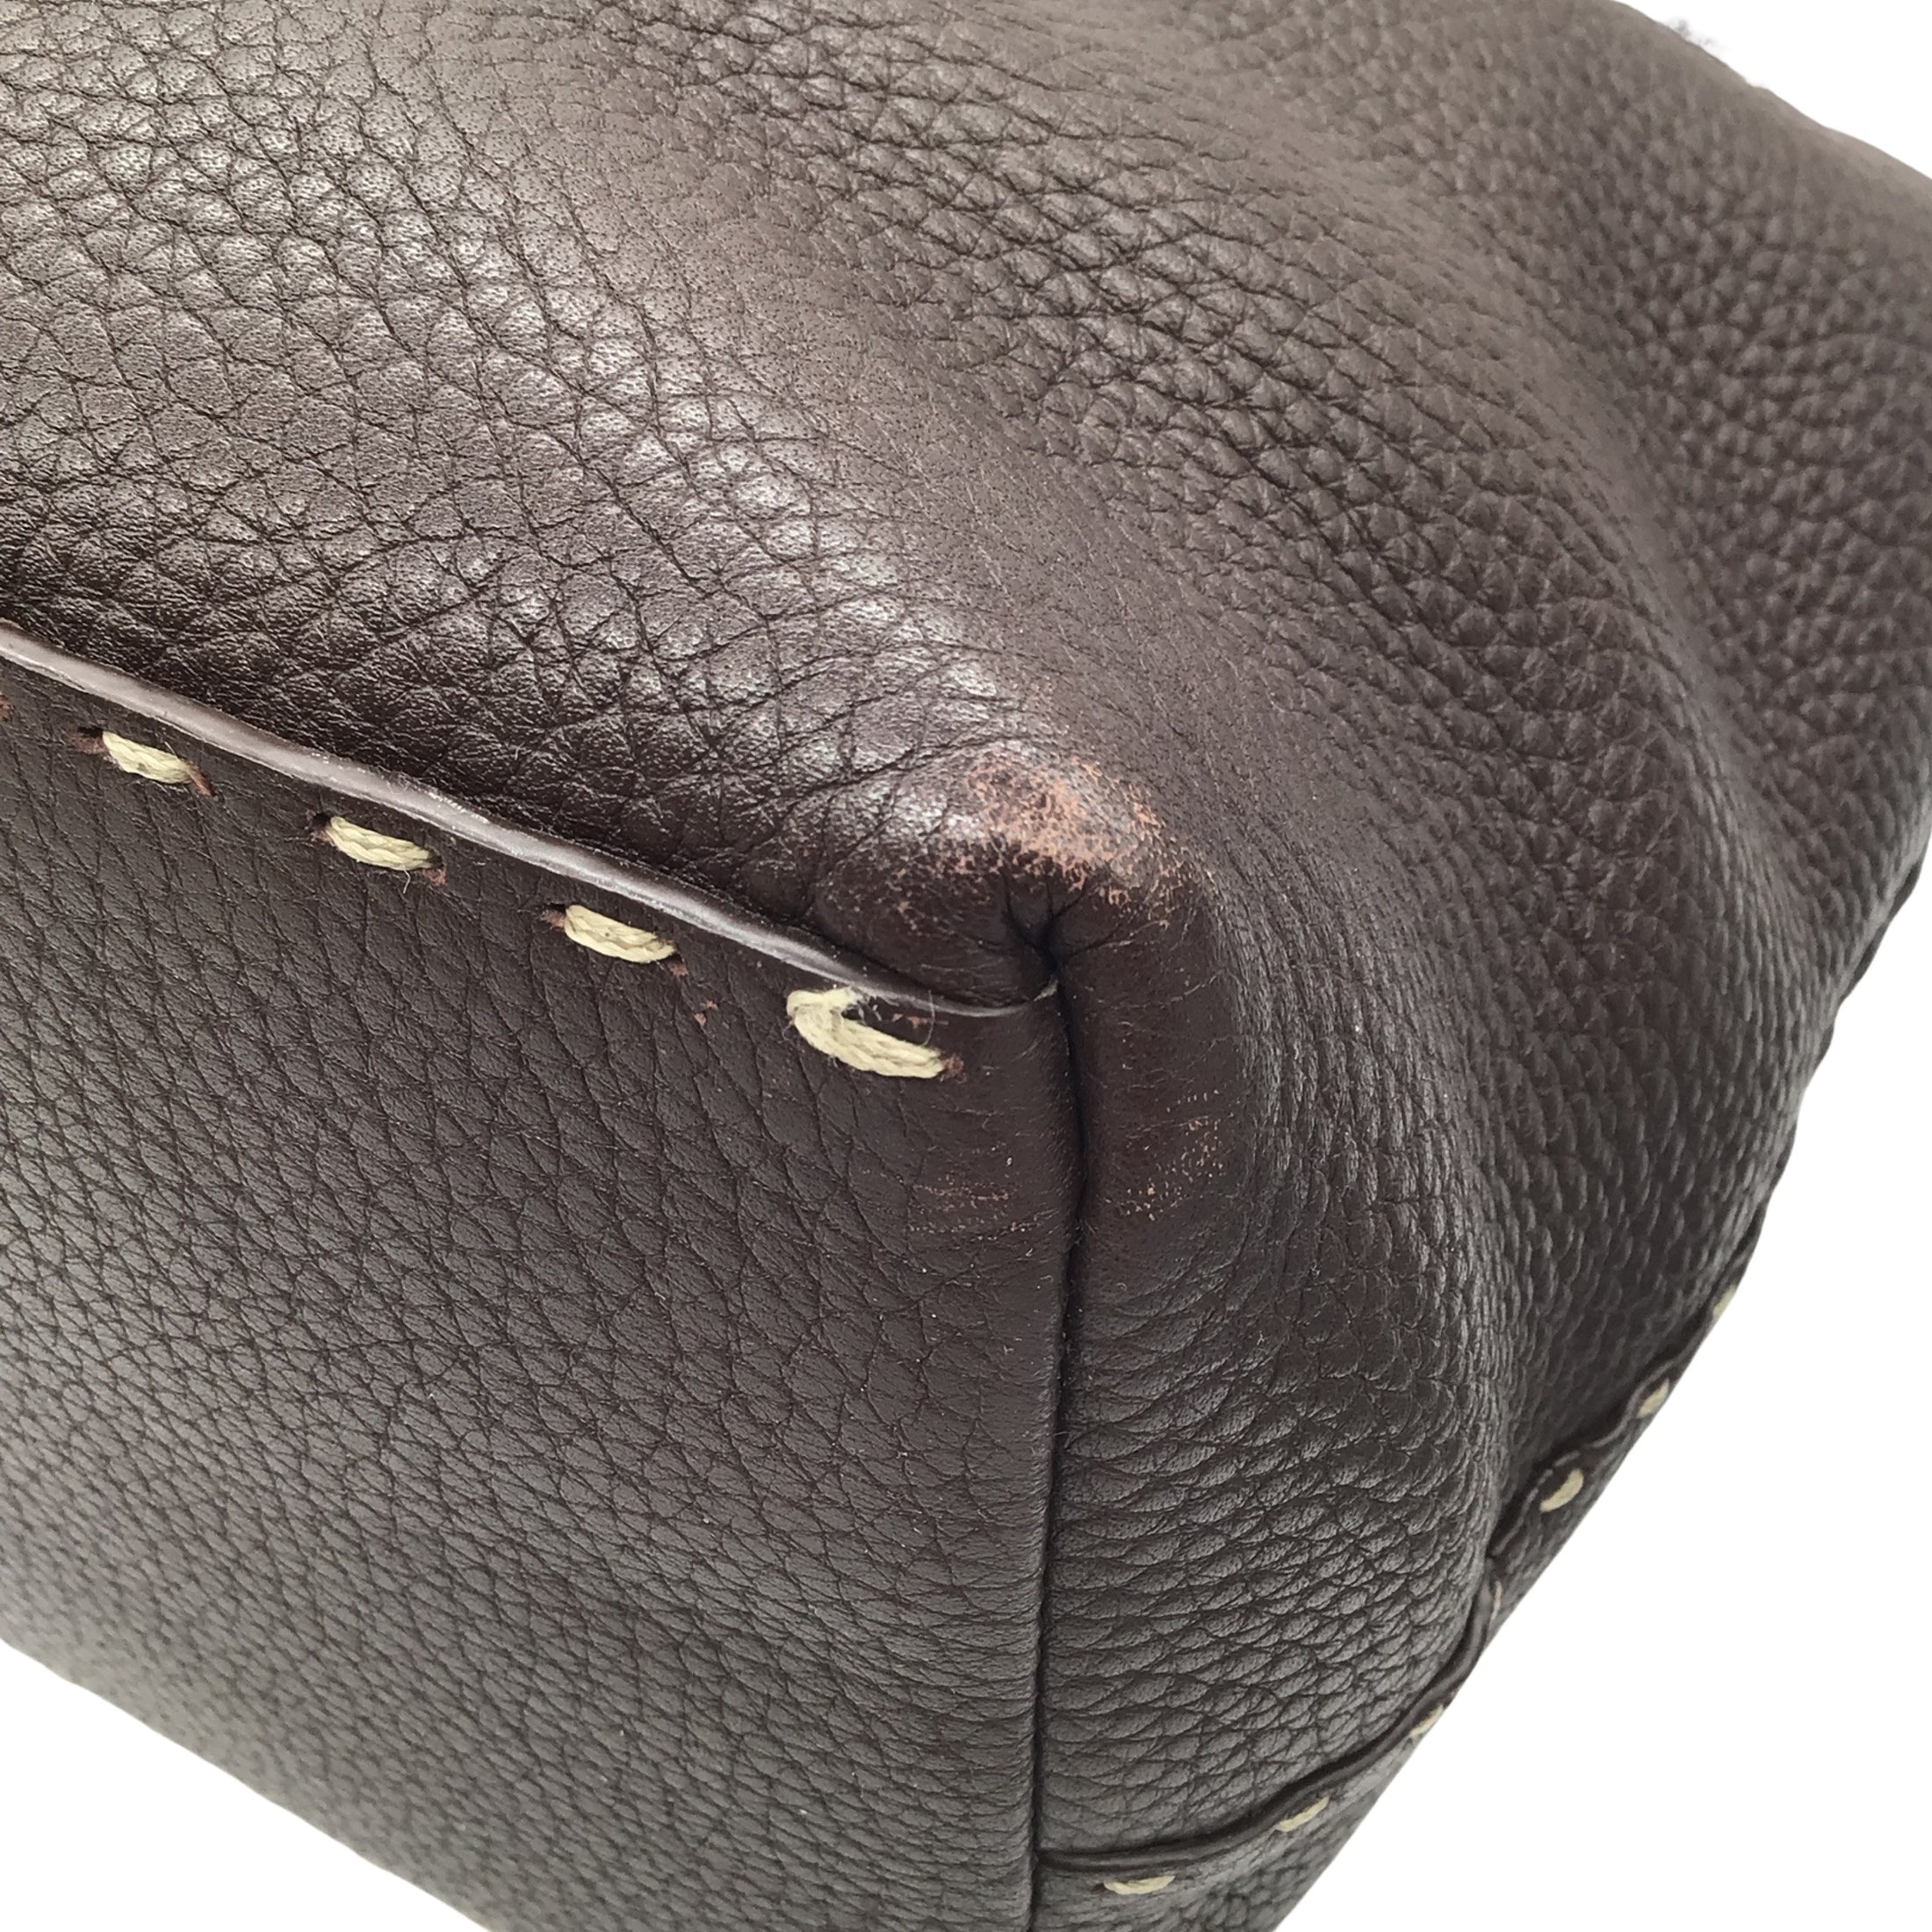 Fendi Brown Selleria Lavorazione A Mano Leather Handbag